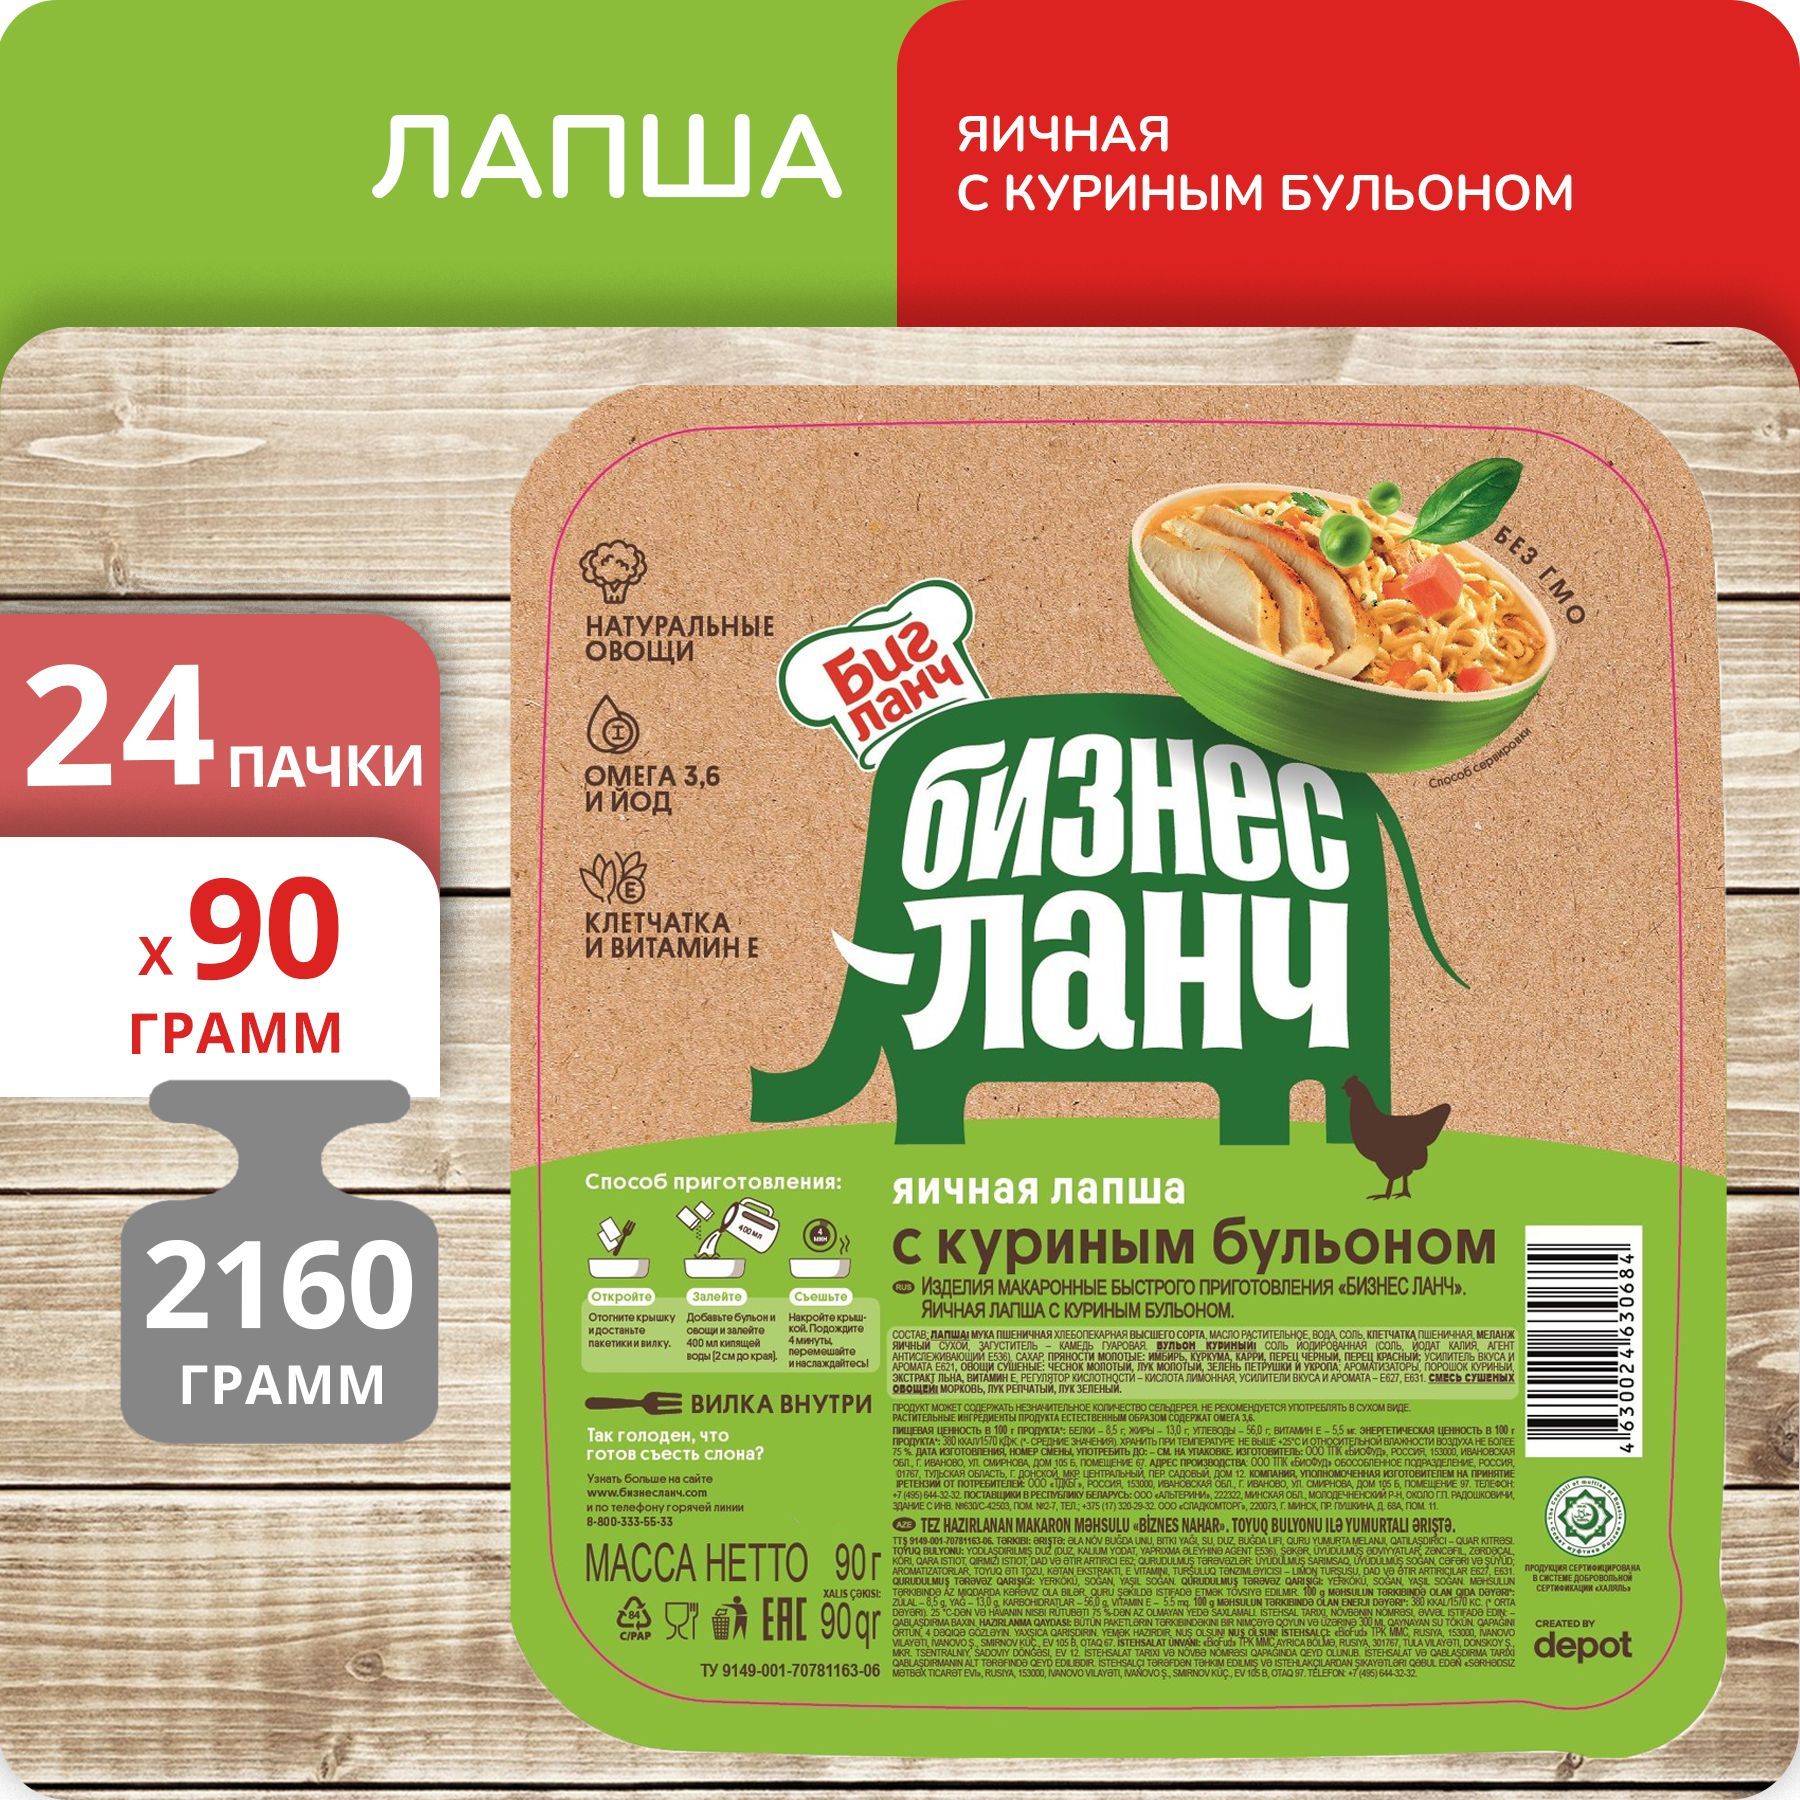 Лапша Бизнес Ланч Упаковка яичная с куриным бульоном (лоток) 90г, 24 пачки